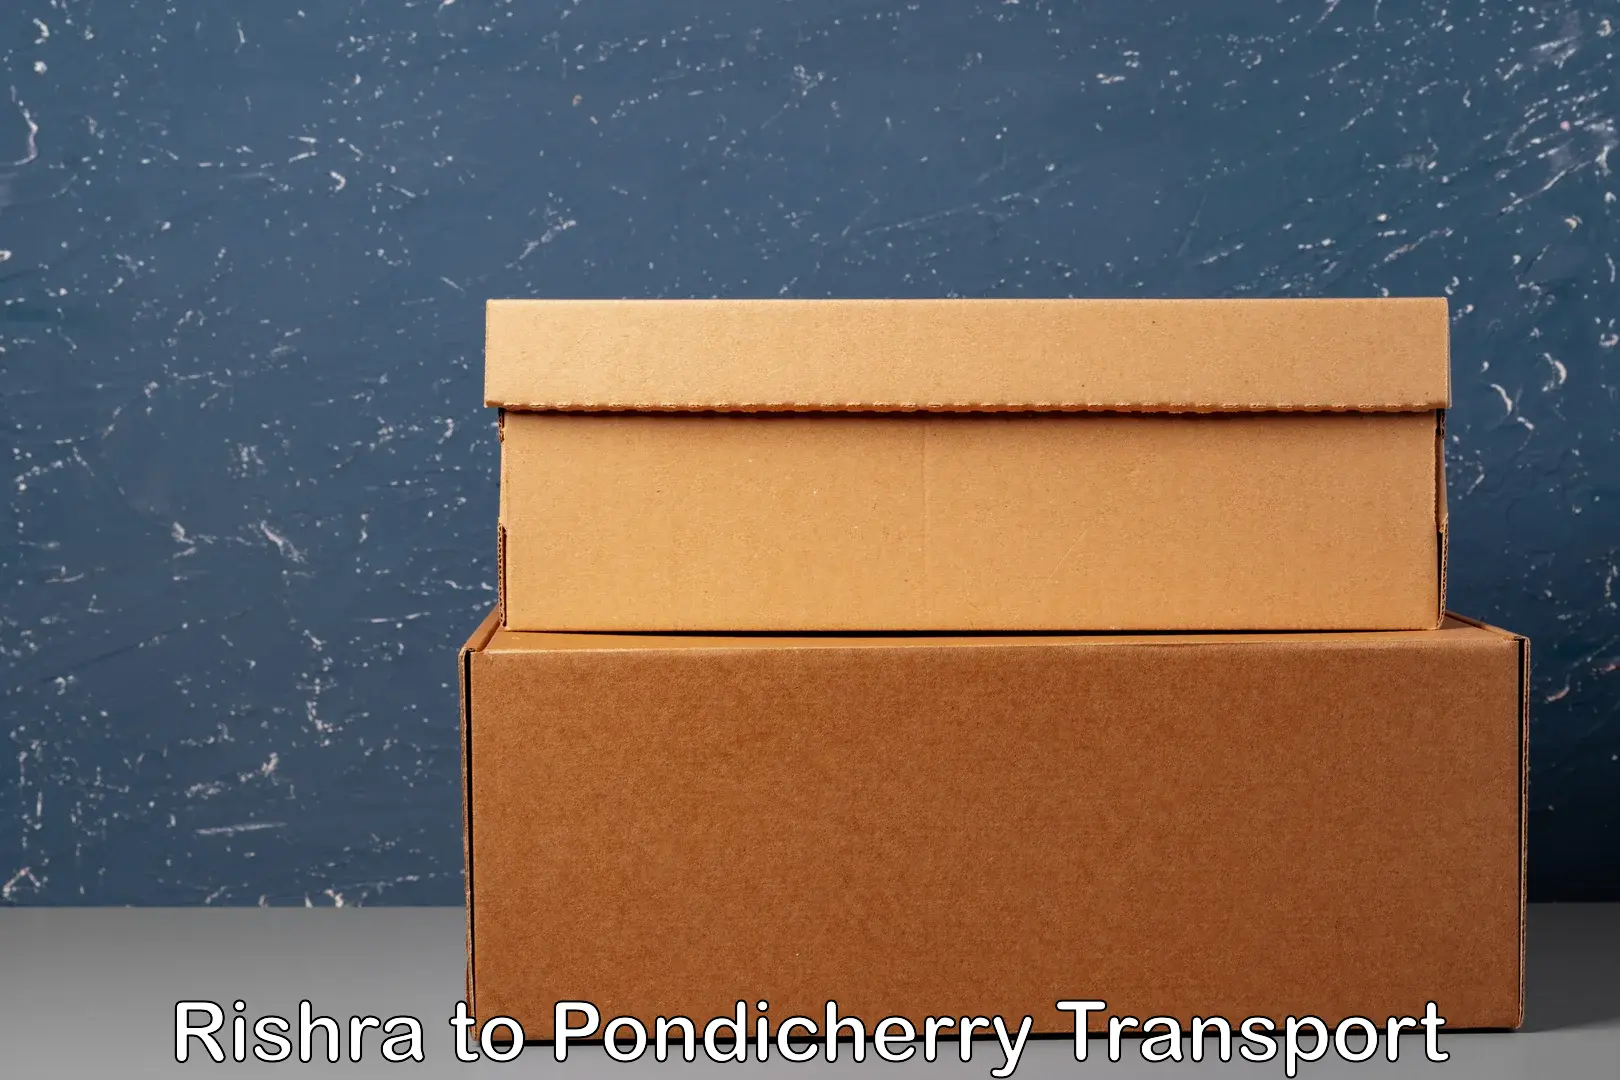 Shipping partner Rishra to Pondicherry